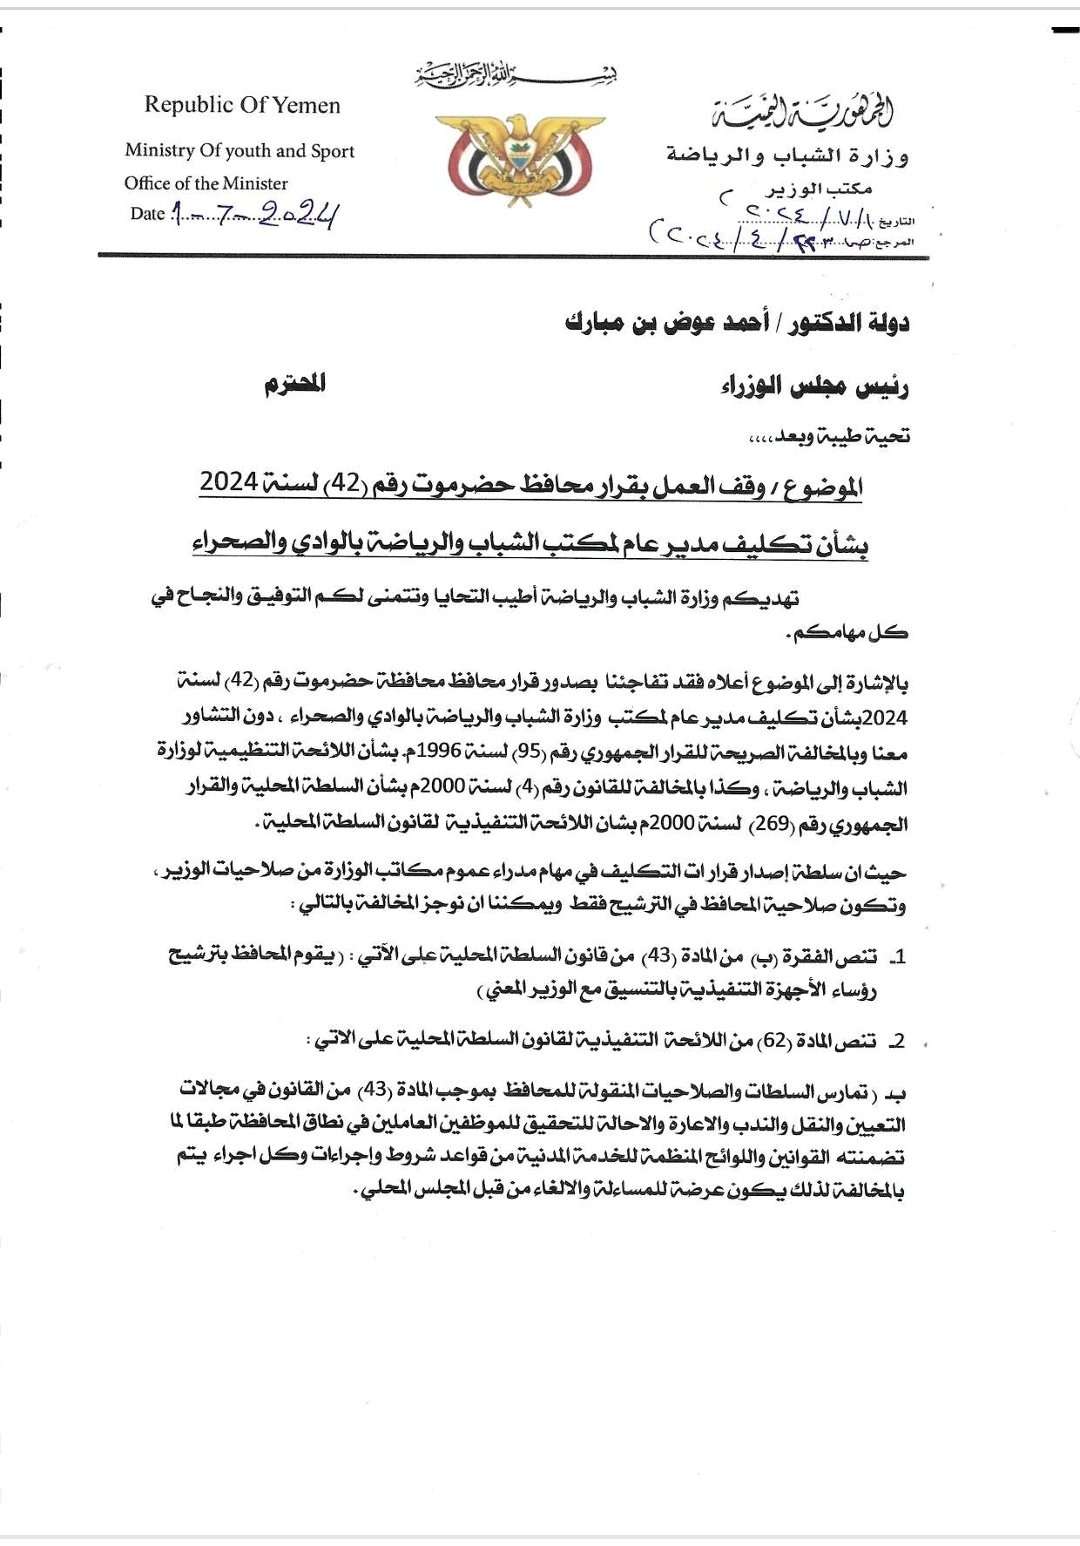 وزير الشباب والرياضة يرسل مذكرة لرئيس الوزراء د. أحمد بن مبارك لوقف العمل بإحدى قرارات محافظ حضرموت